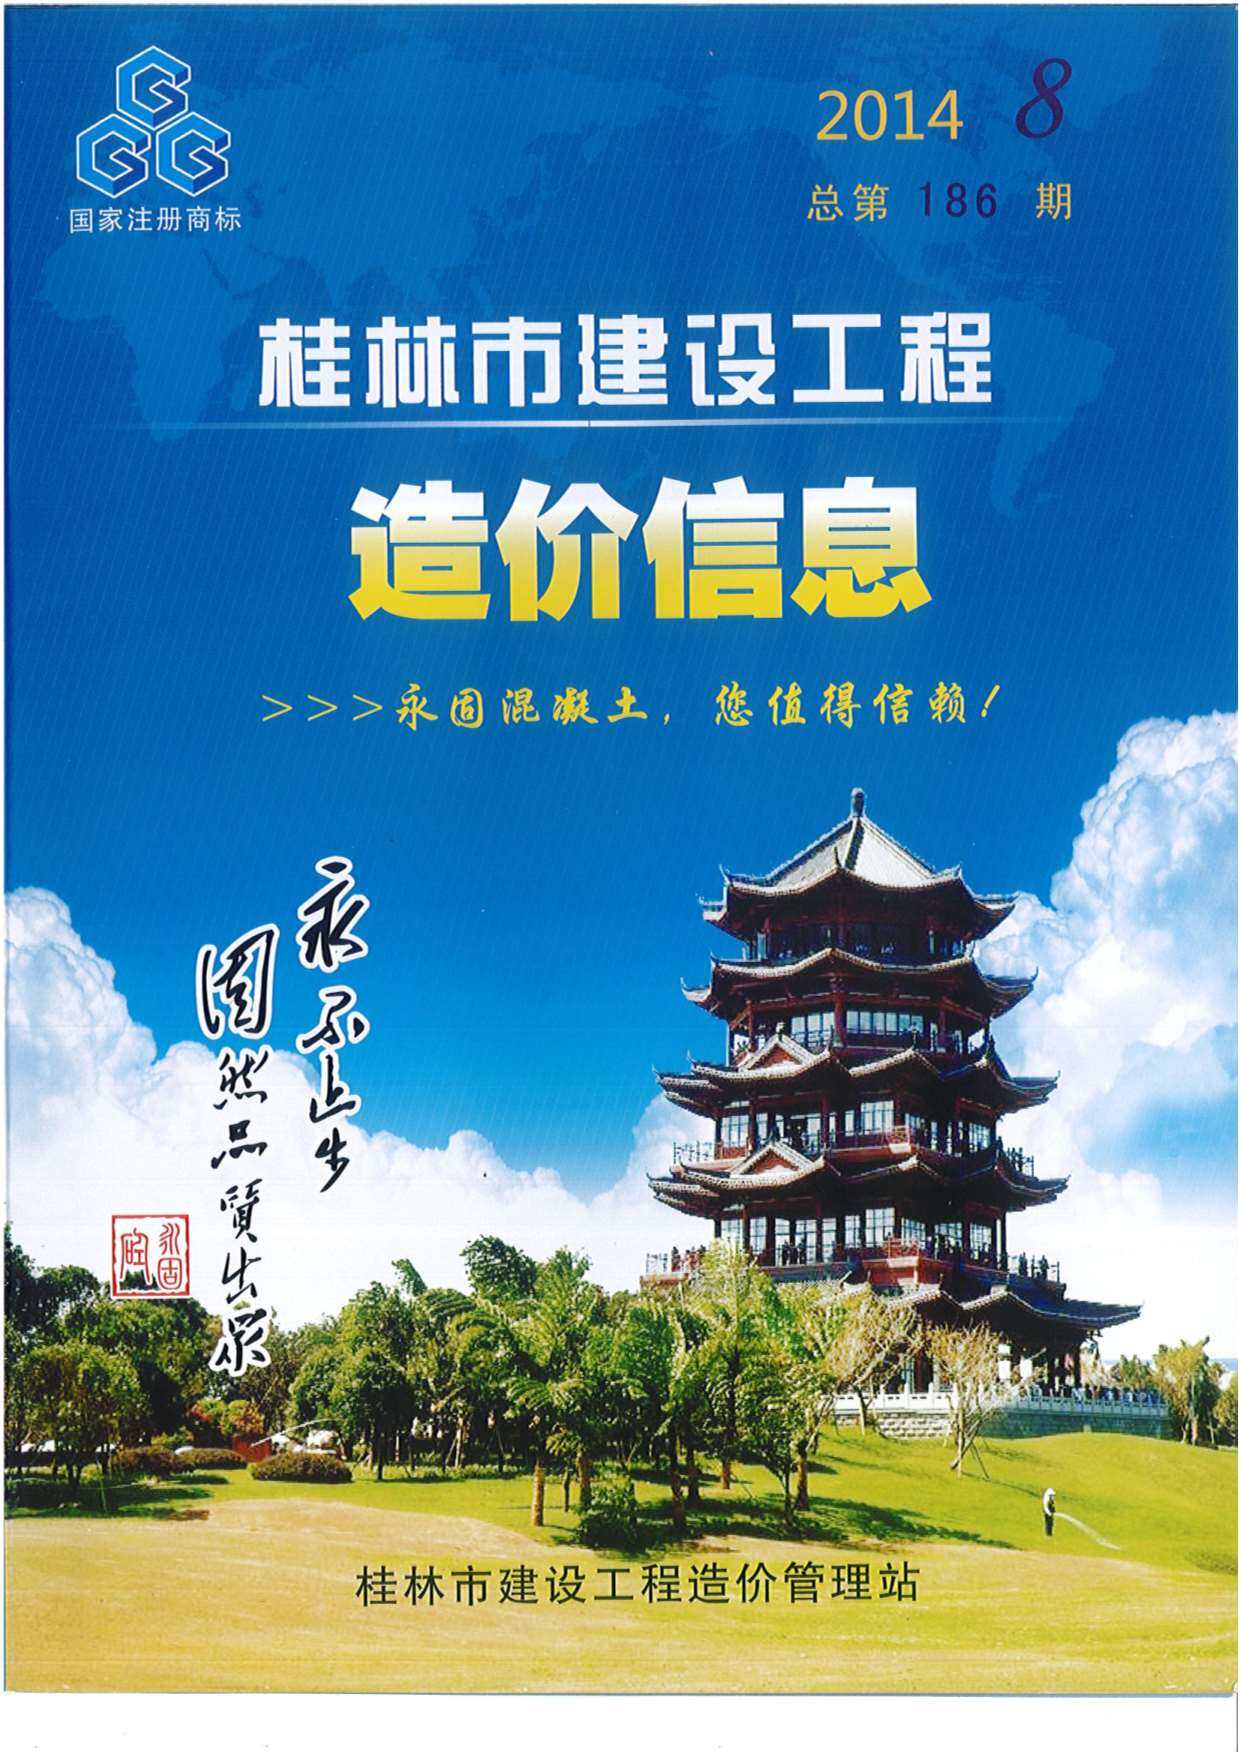 桂林市2014年8月工程造价信息期刊